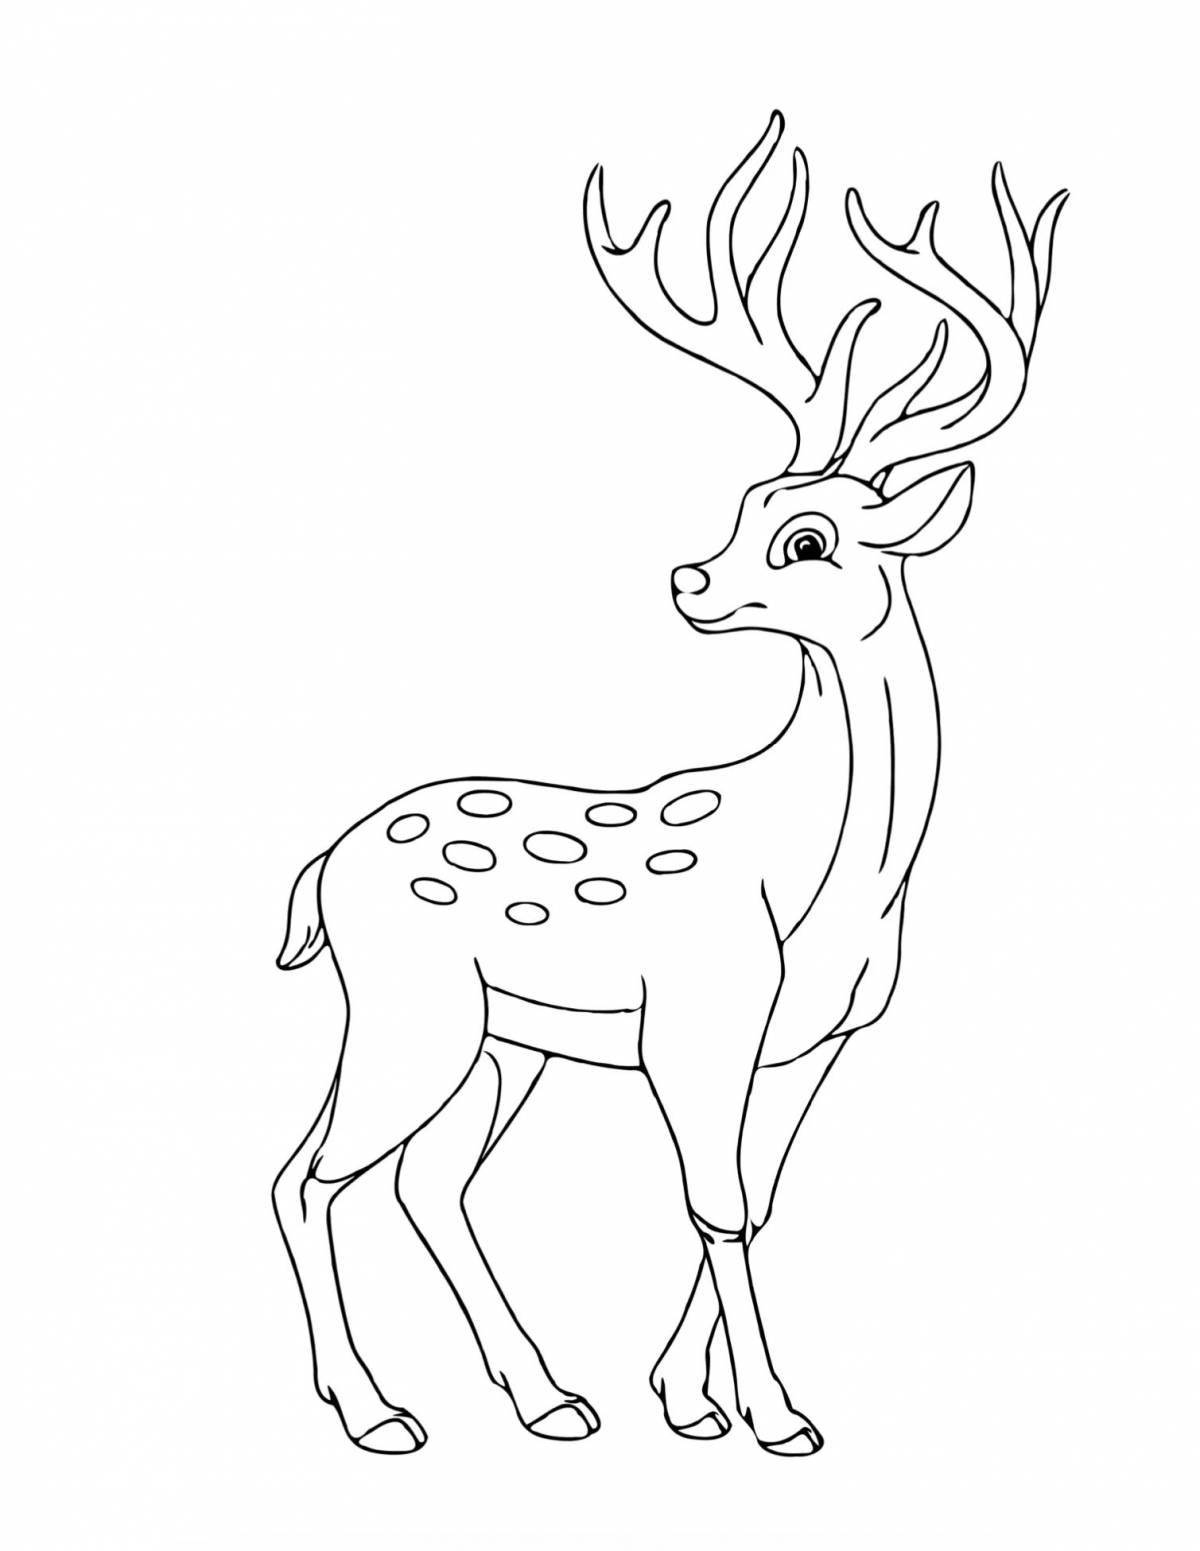 Coloring page elegant sika deer